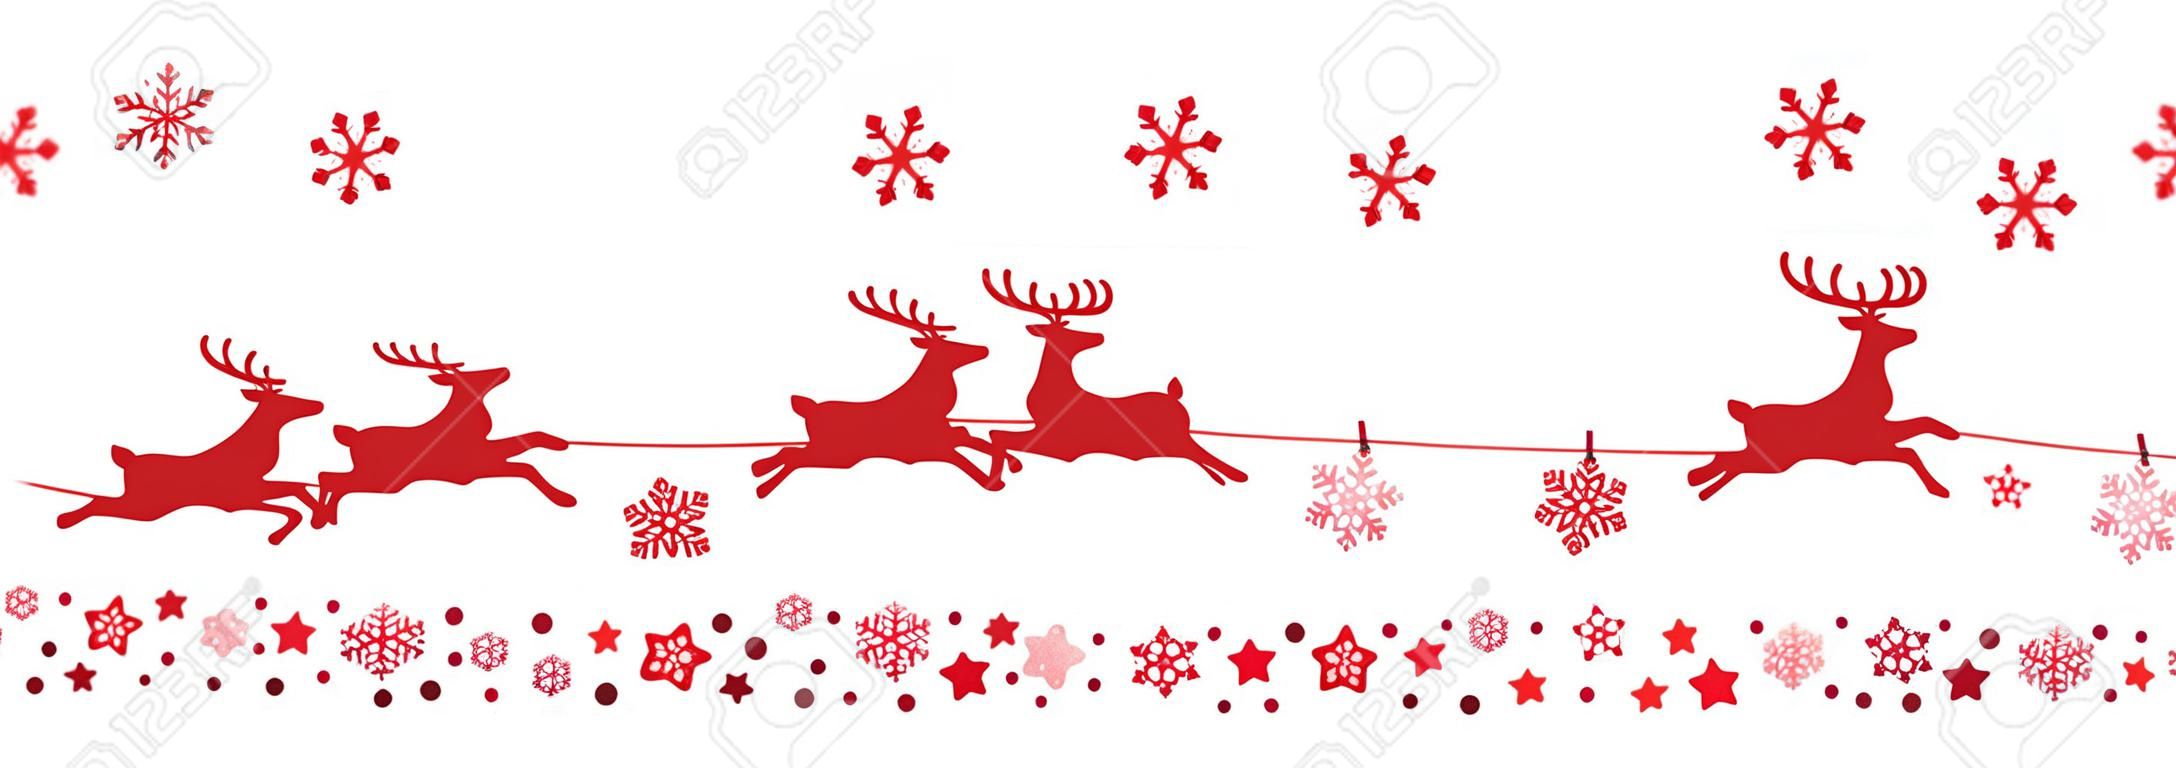 flocons de neige de Santa traîneau de rennes volants silhouette rouge